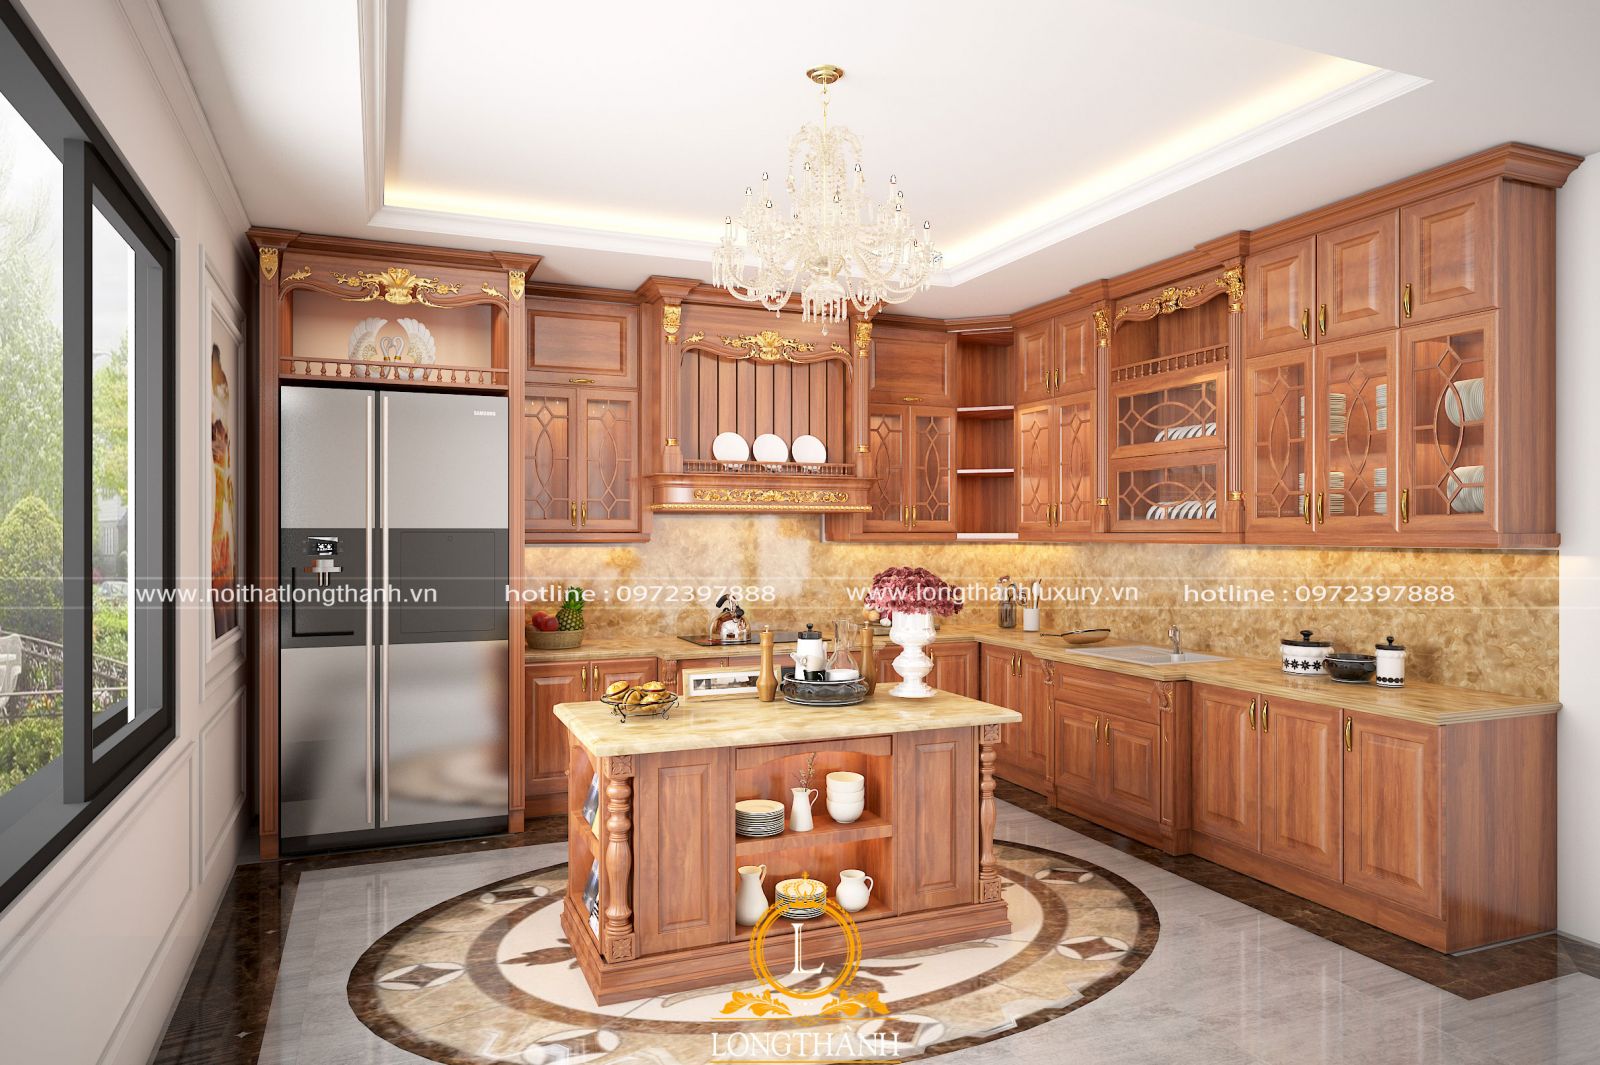 Tủ bếp màu gỗ Gõ đỏ được nhiều khách hàng chọn mua